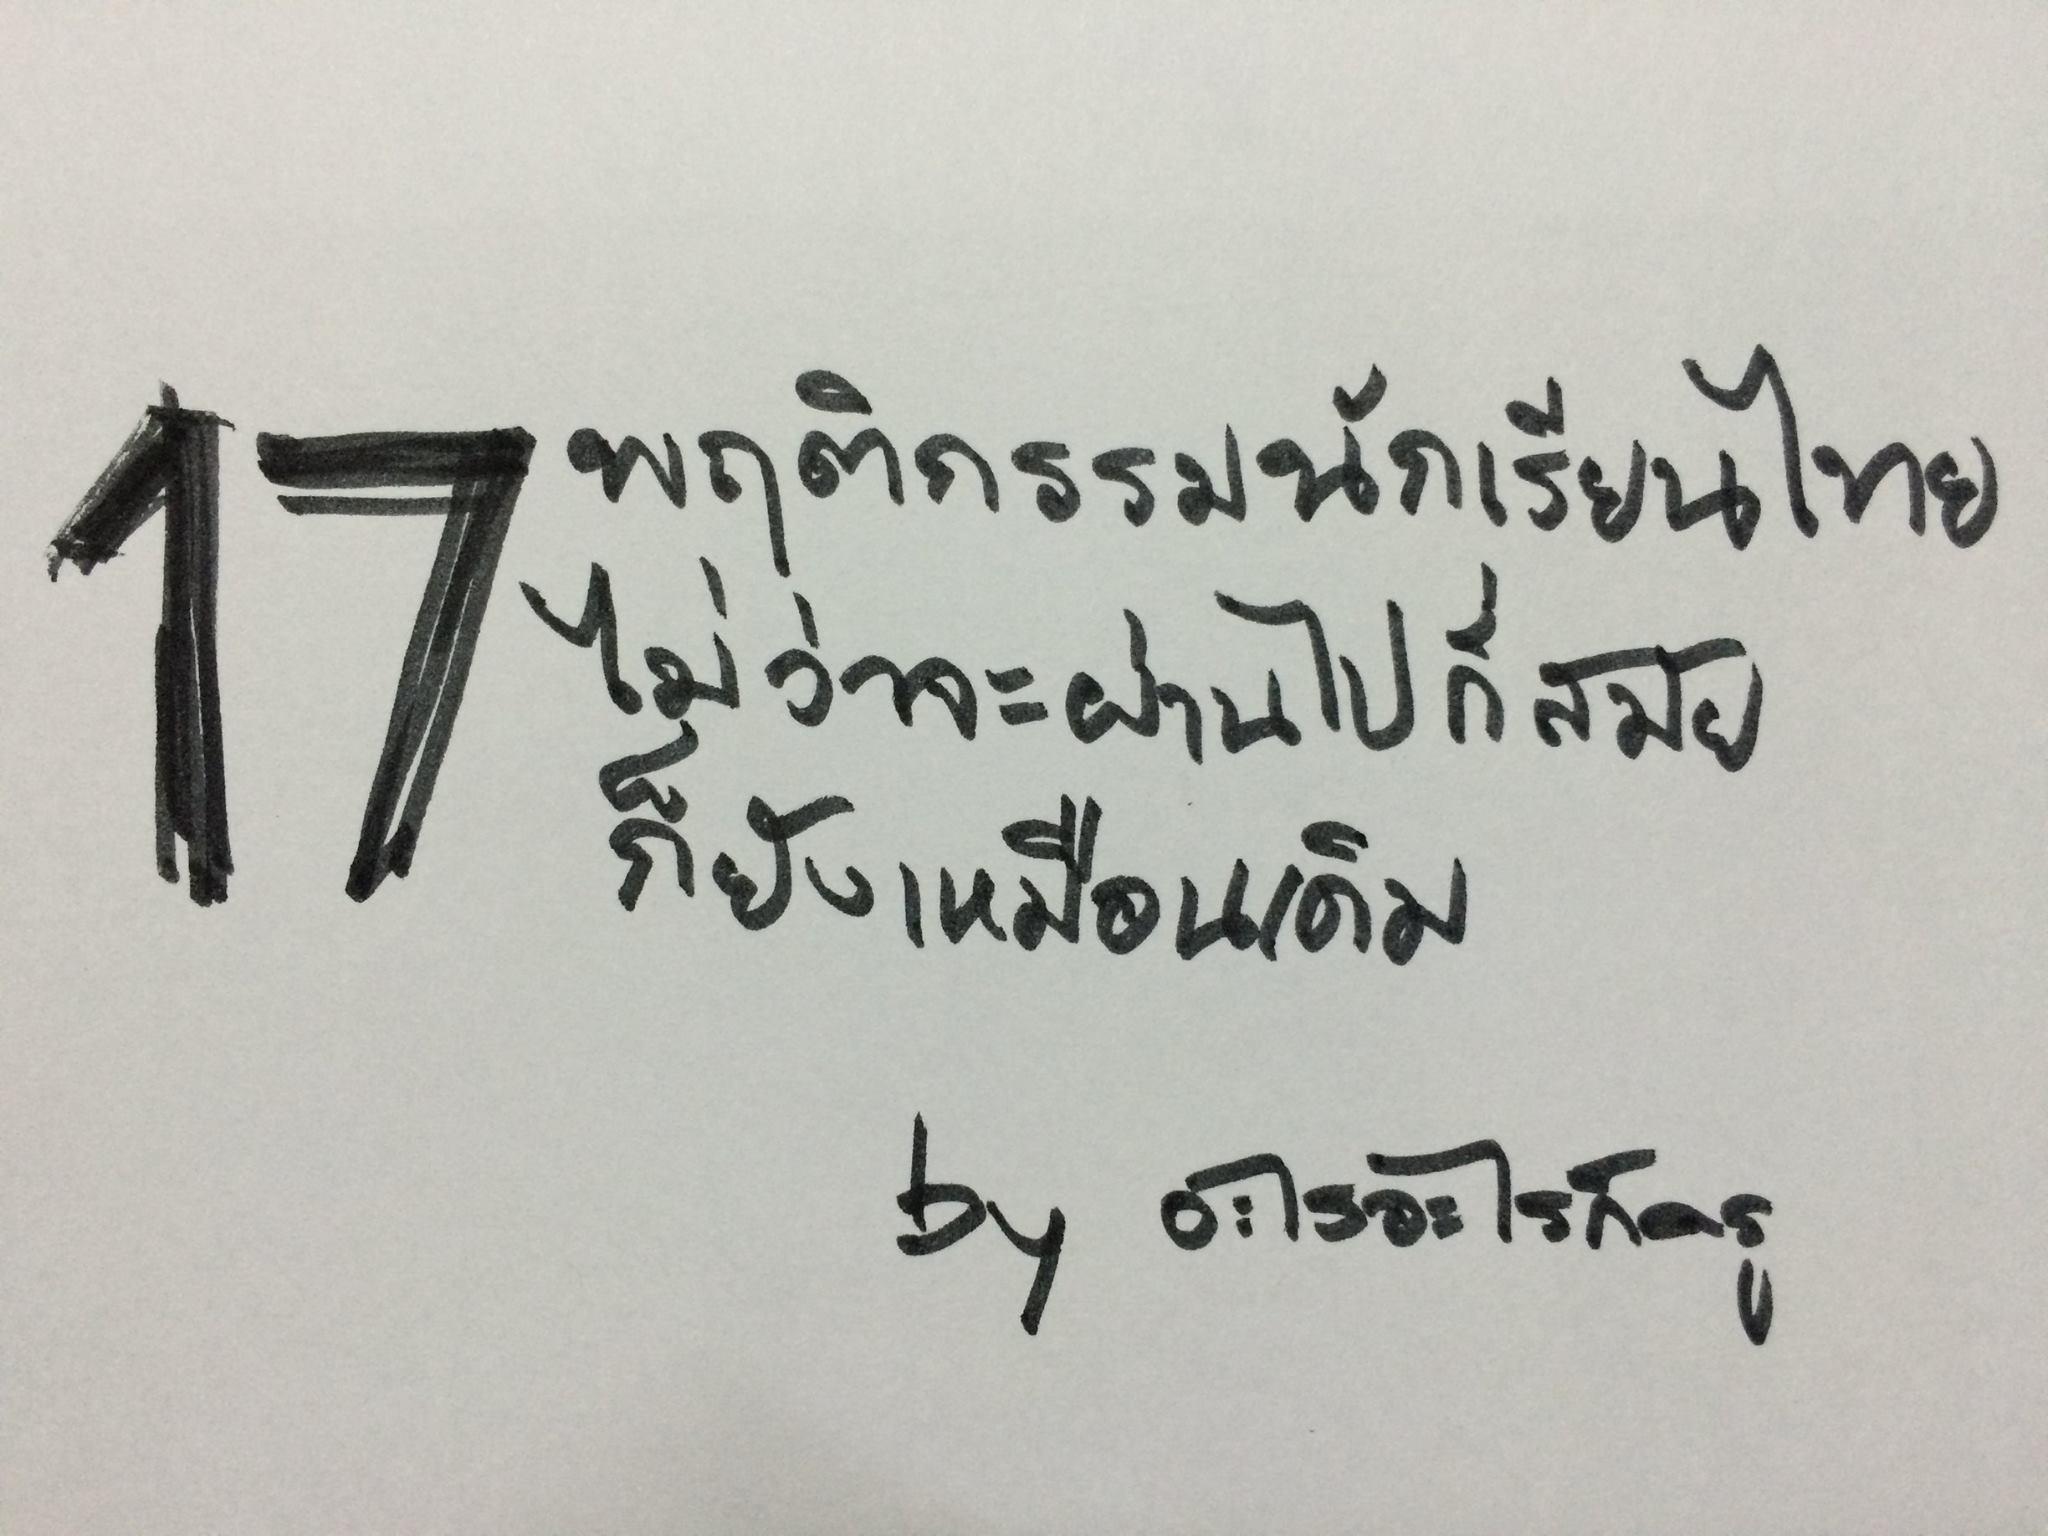 17 พฤติกรรมนักเรียนไทย